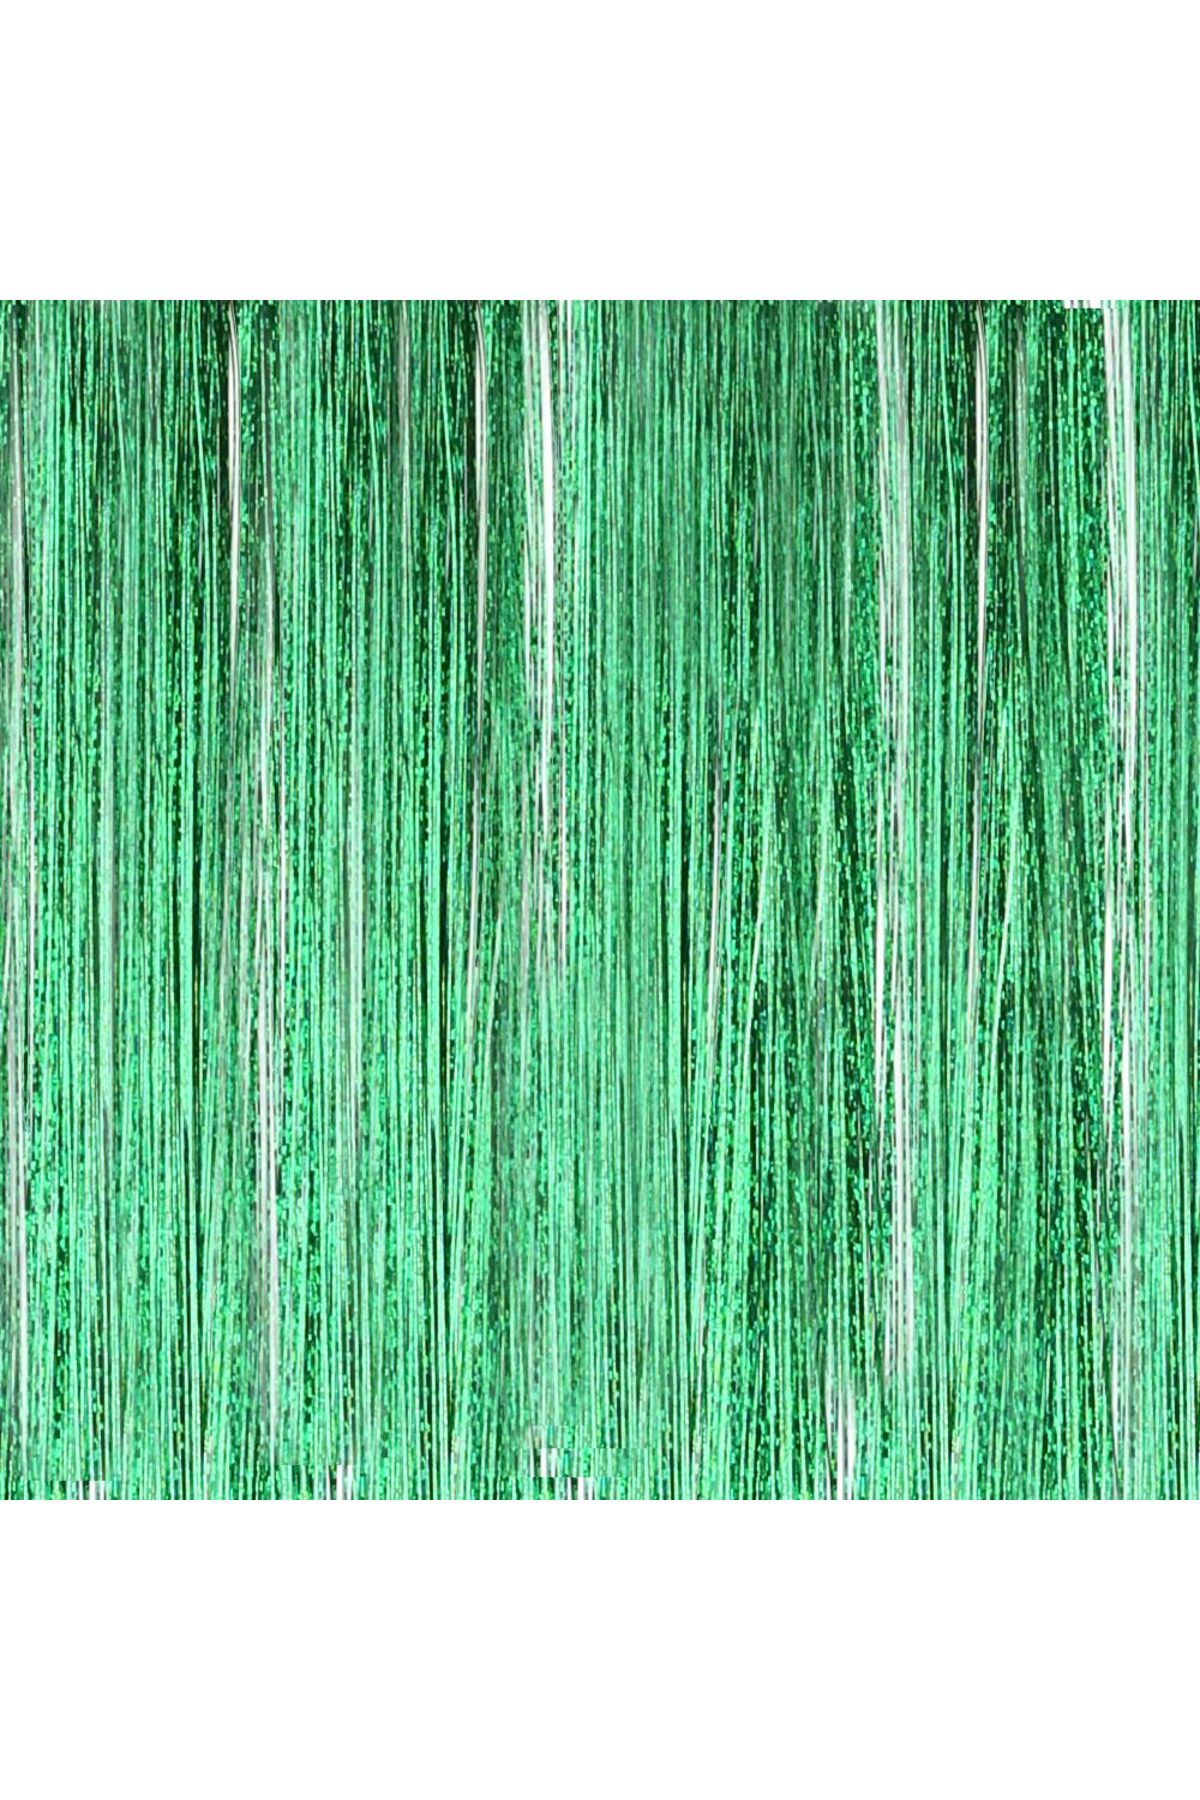 Ali The Stereo Lisinya201 Hair Tinsel / Saç Simi / Yeşil alithestereo